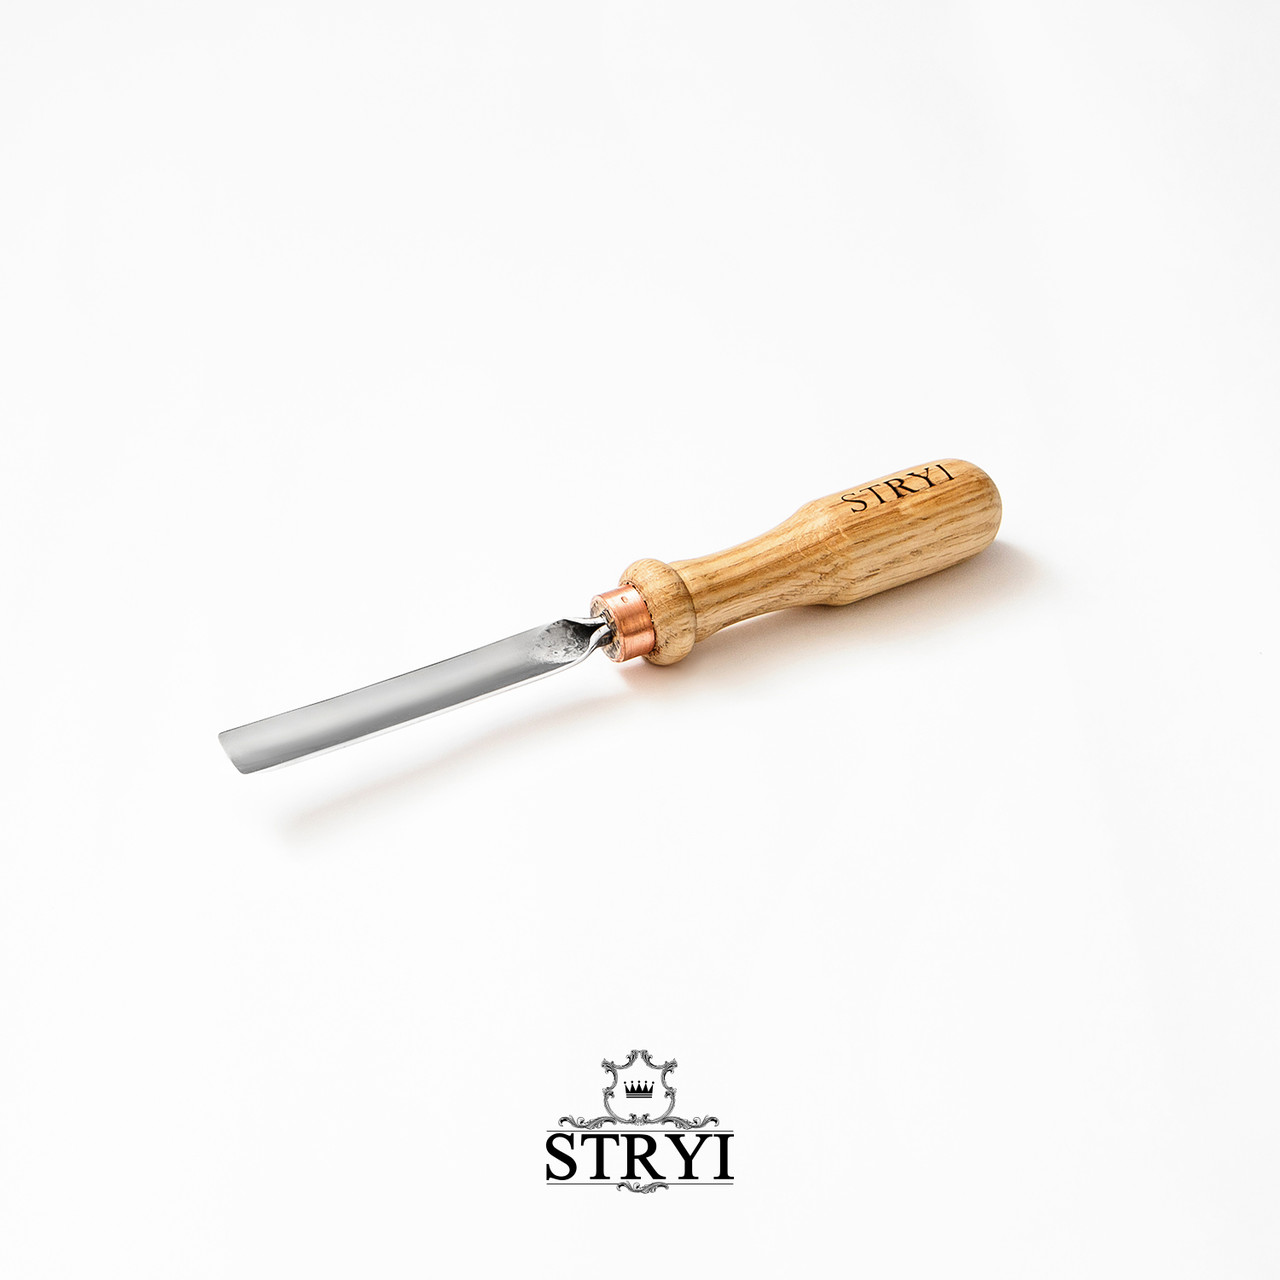 Стамеска полога 15 мм STRYI Profi для різьби по дереву, арт. 100715, фото 1